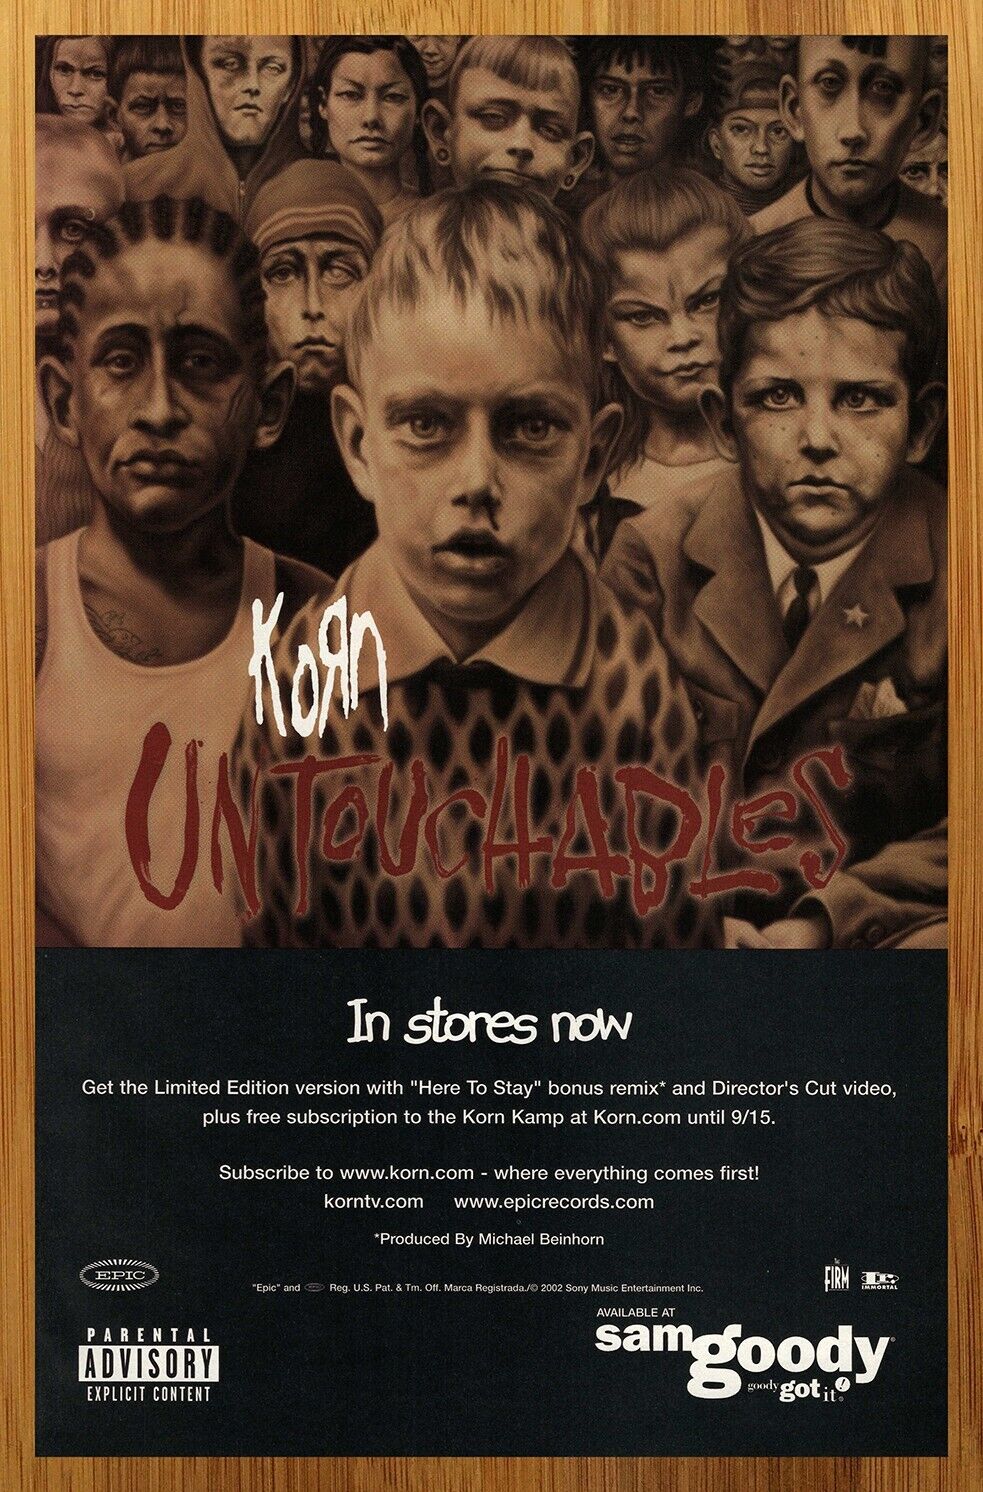 2002 Korn Untouchables Vintage Print Ad/Poster Album CD LP Music Promo Art 00s